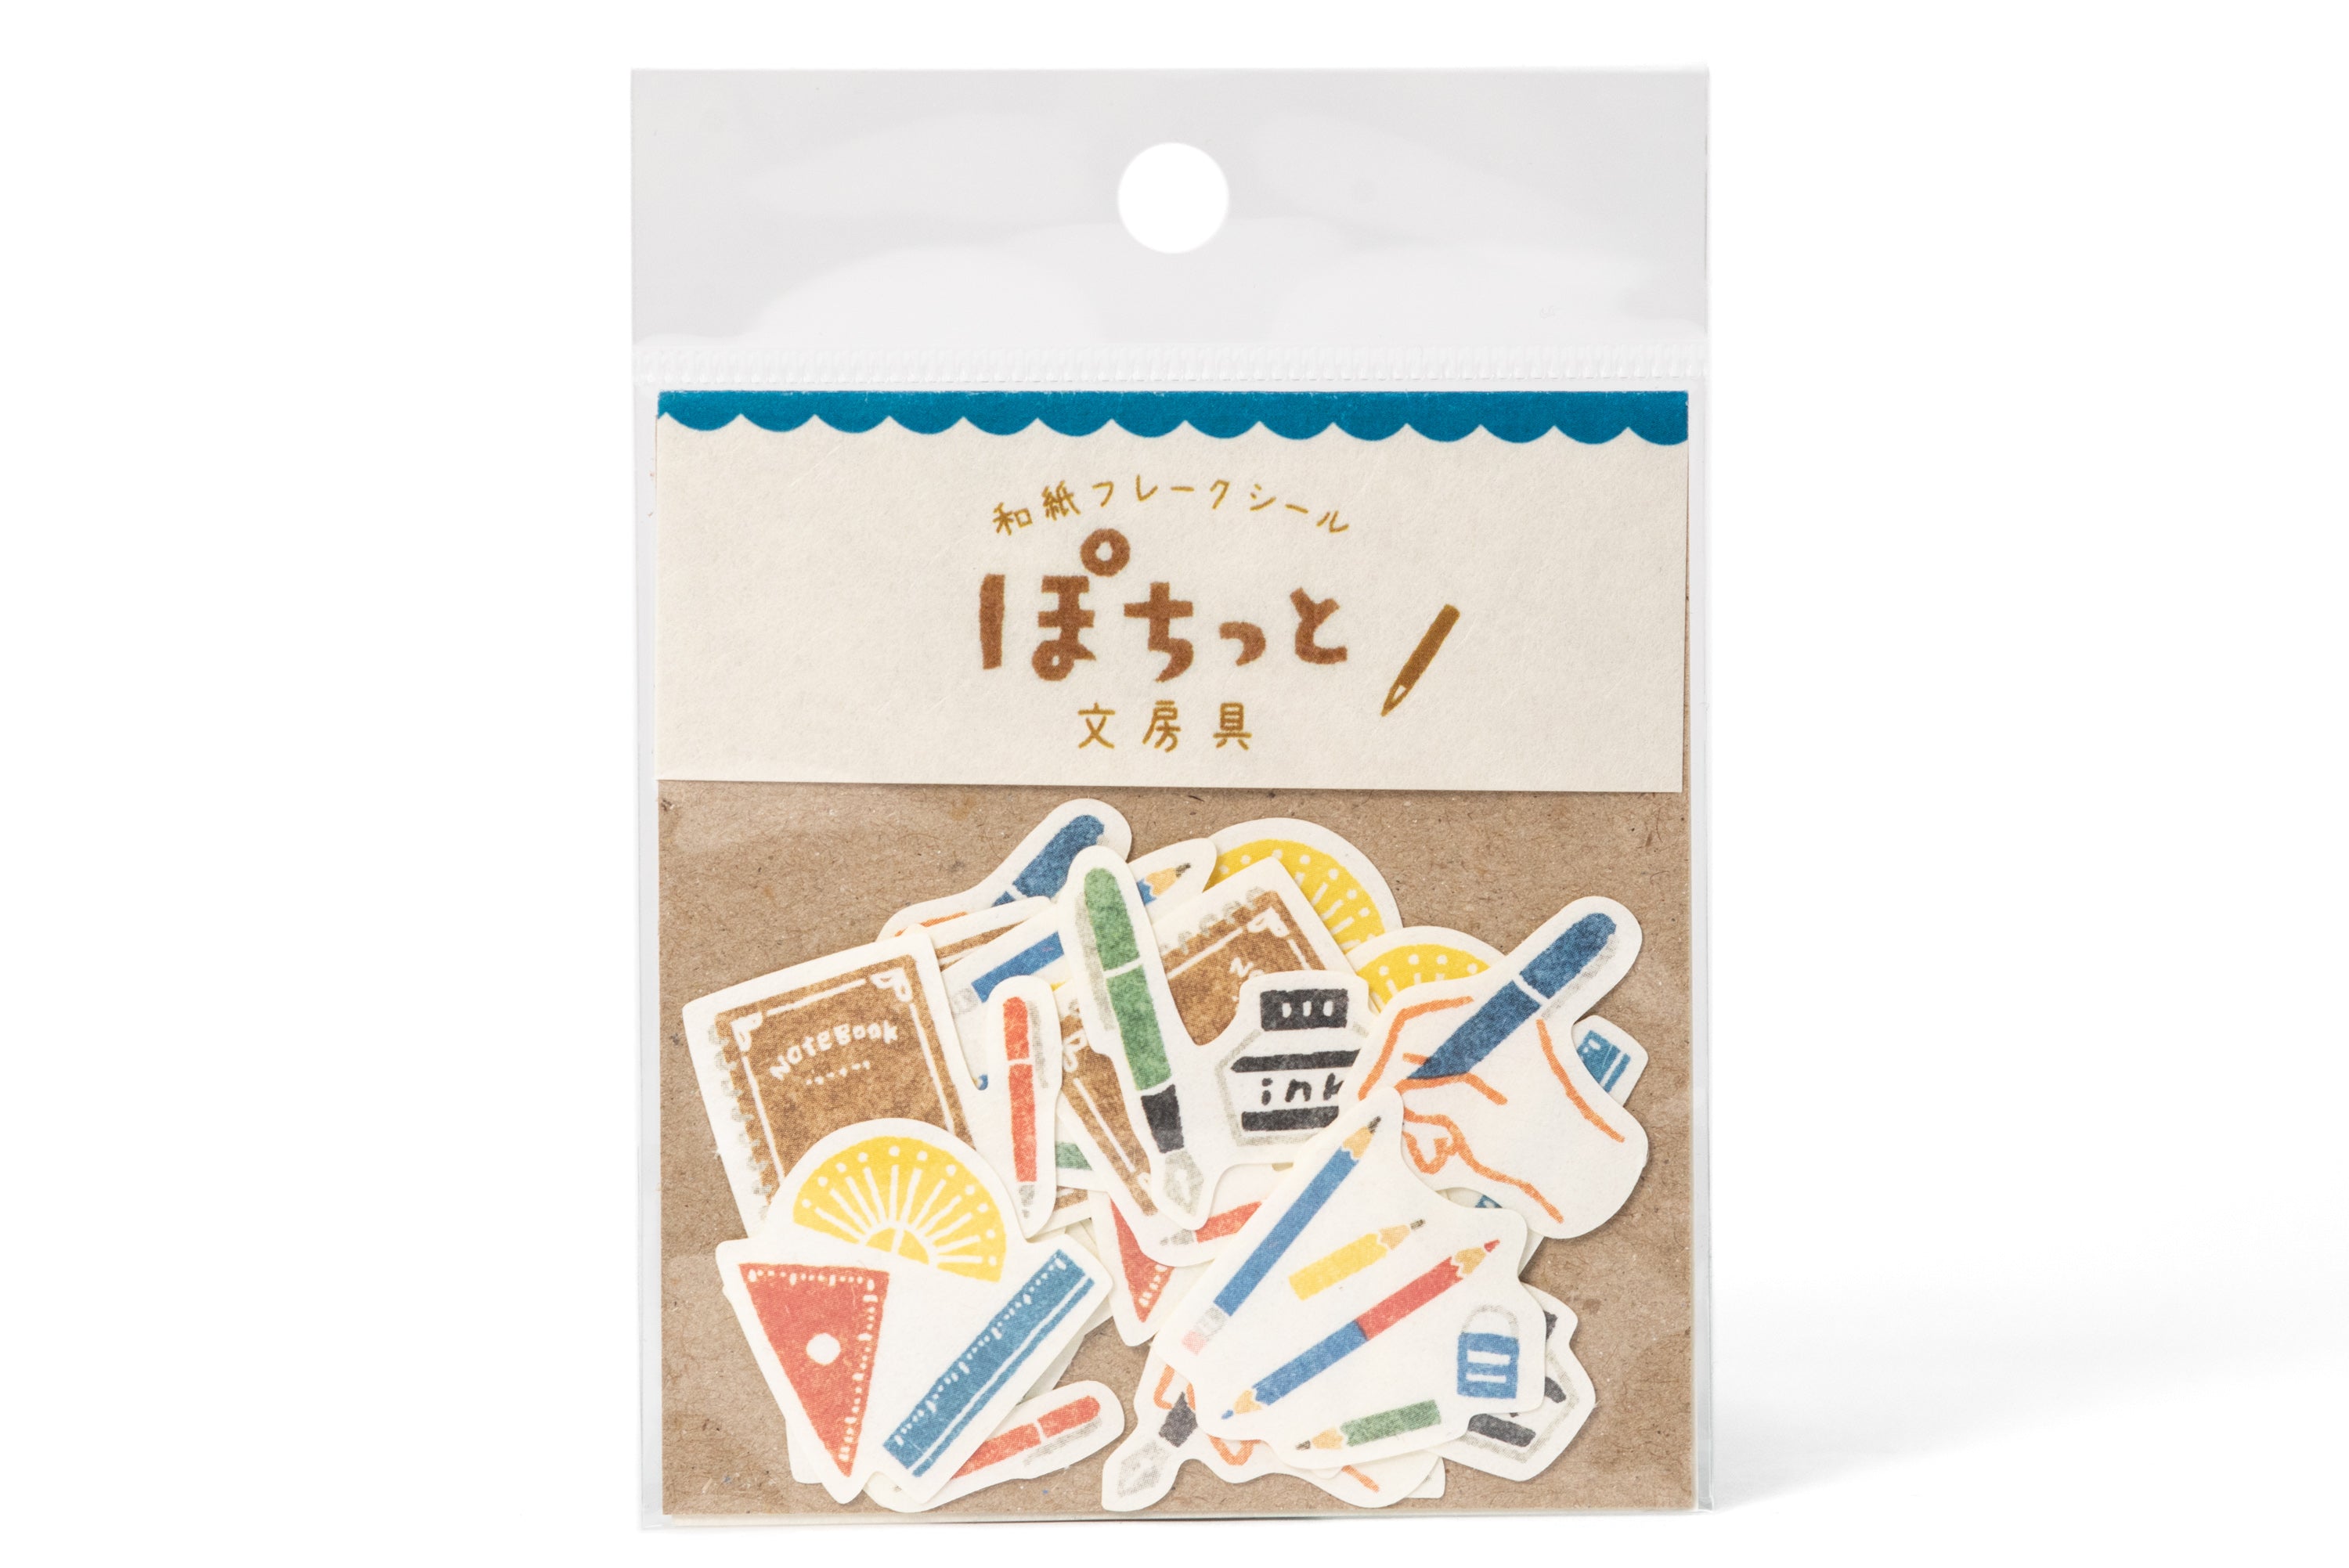 Furukawashiko Washi Flake Sticker Pack - Stationery - 20 Pieces